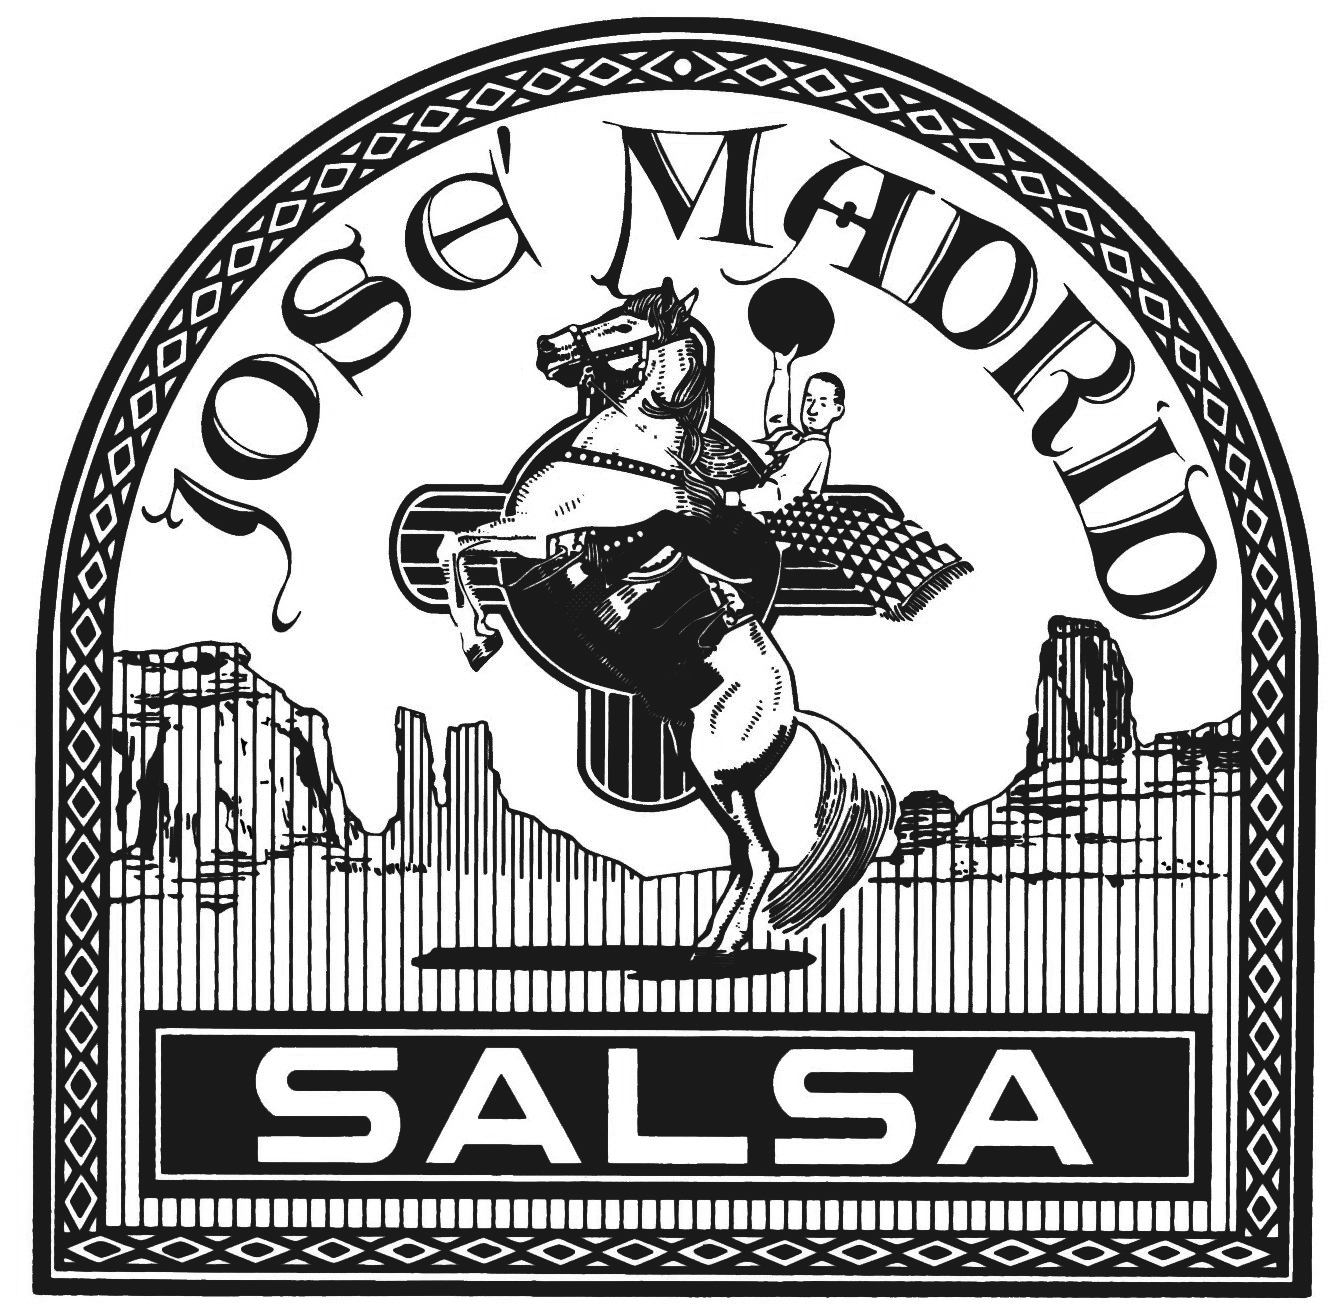 Jose Madrid Salsa 1.jpg